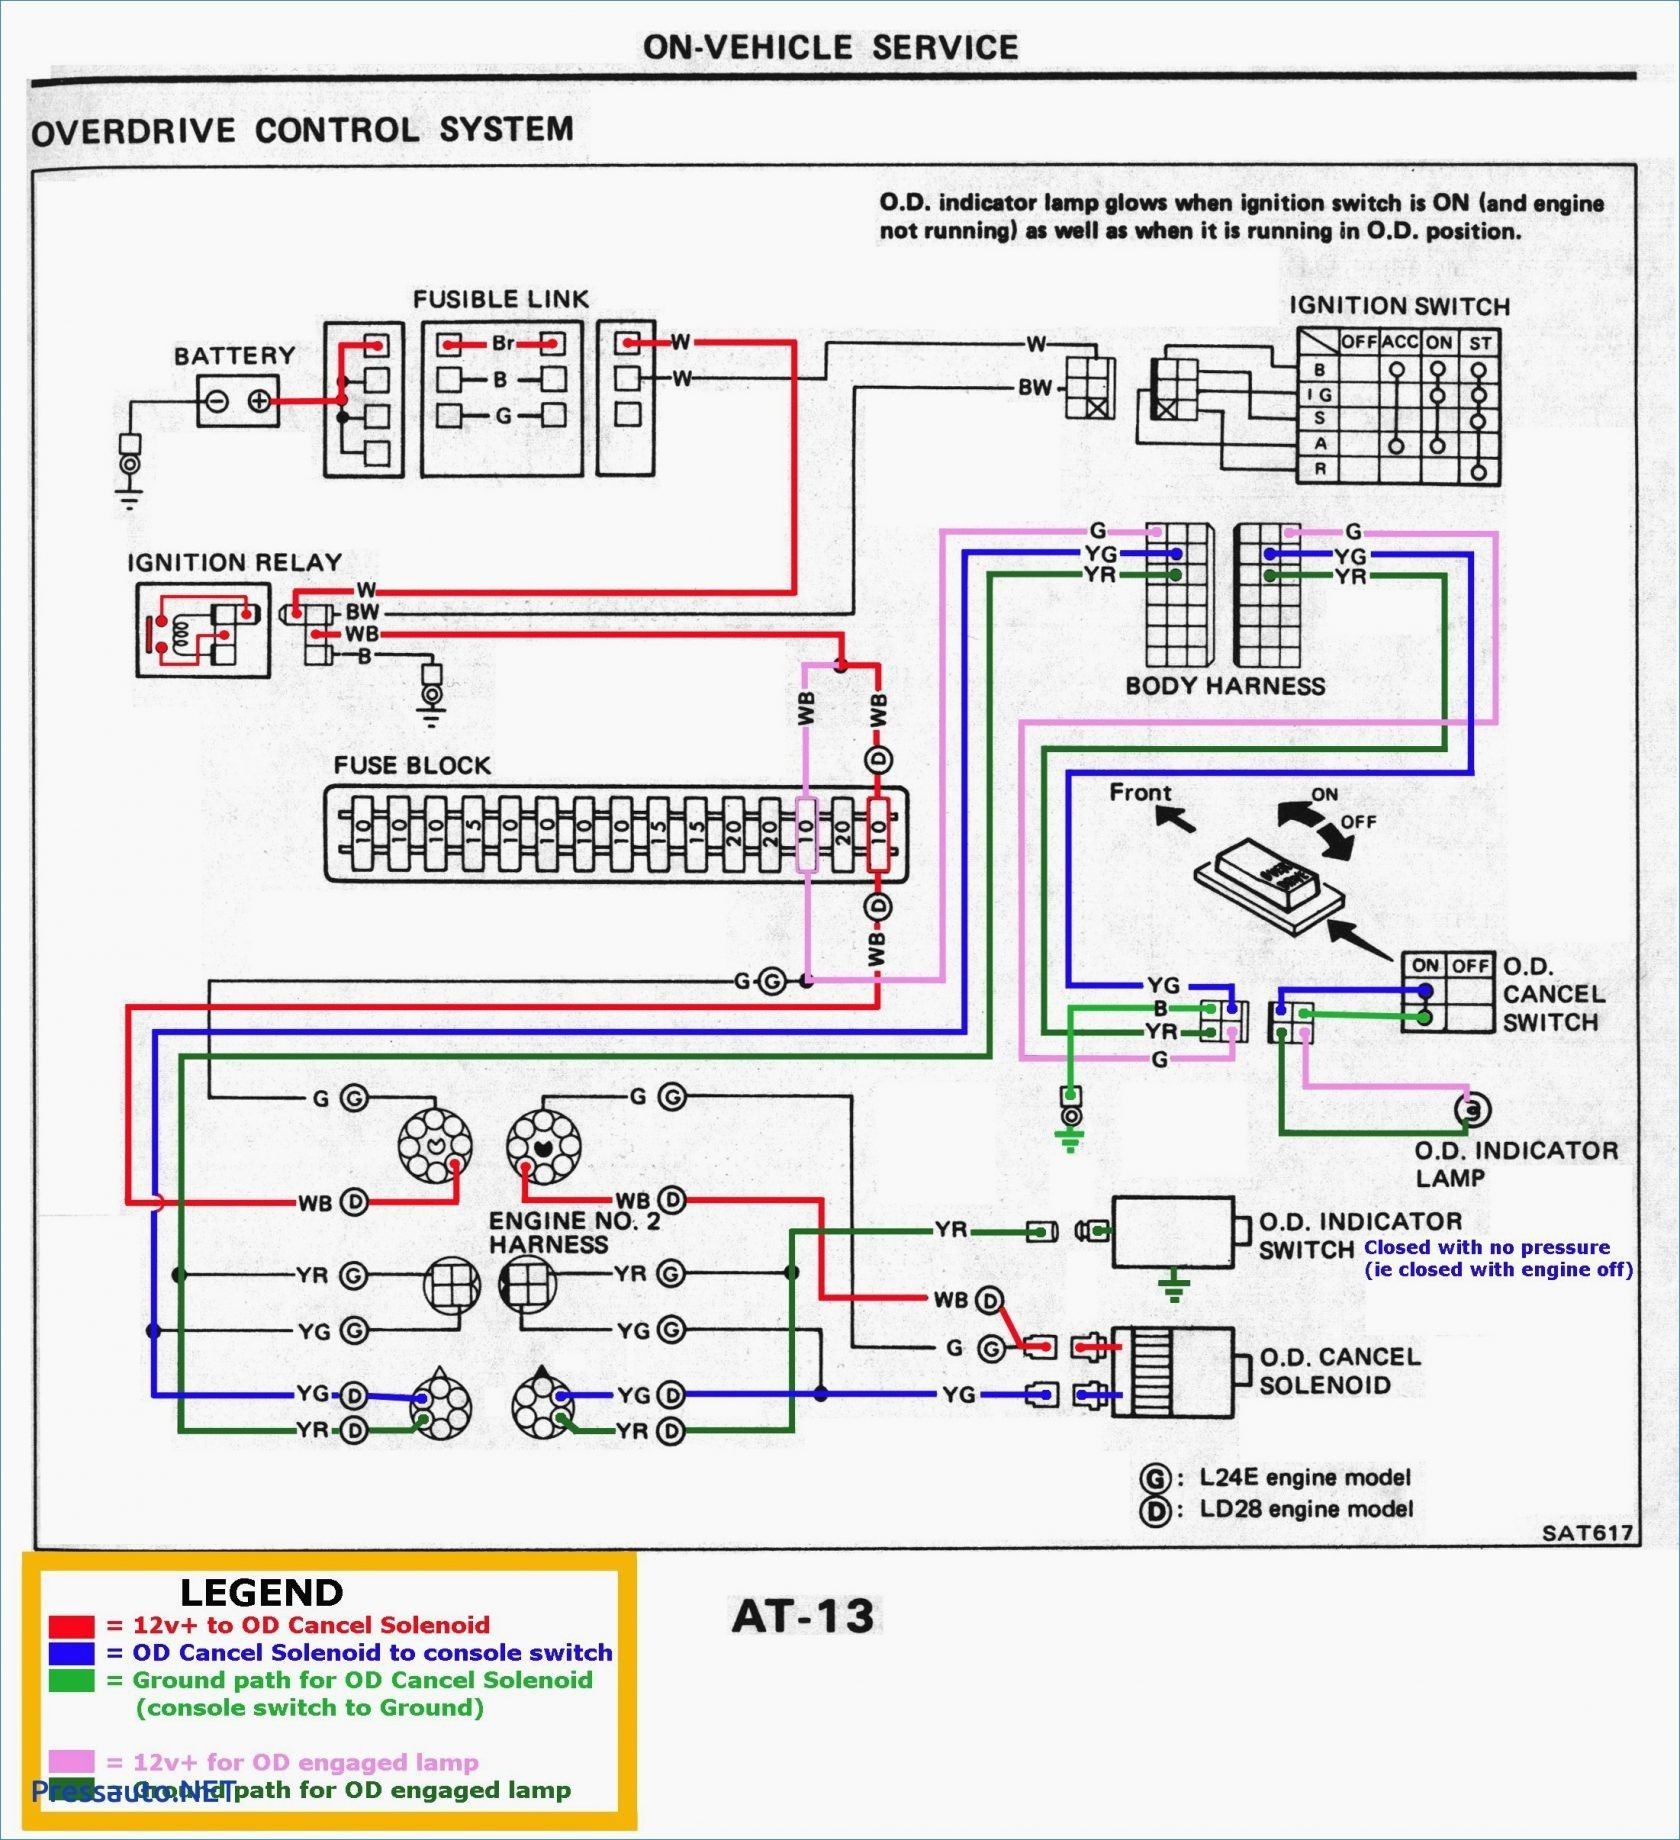 Lifan 110cc Engine Diagram Lifan Wiring Diagram 124 3cm Wiring Diagram Inside Of Lifan 110cc Engine Diagram